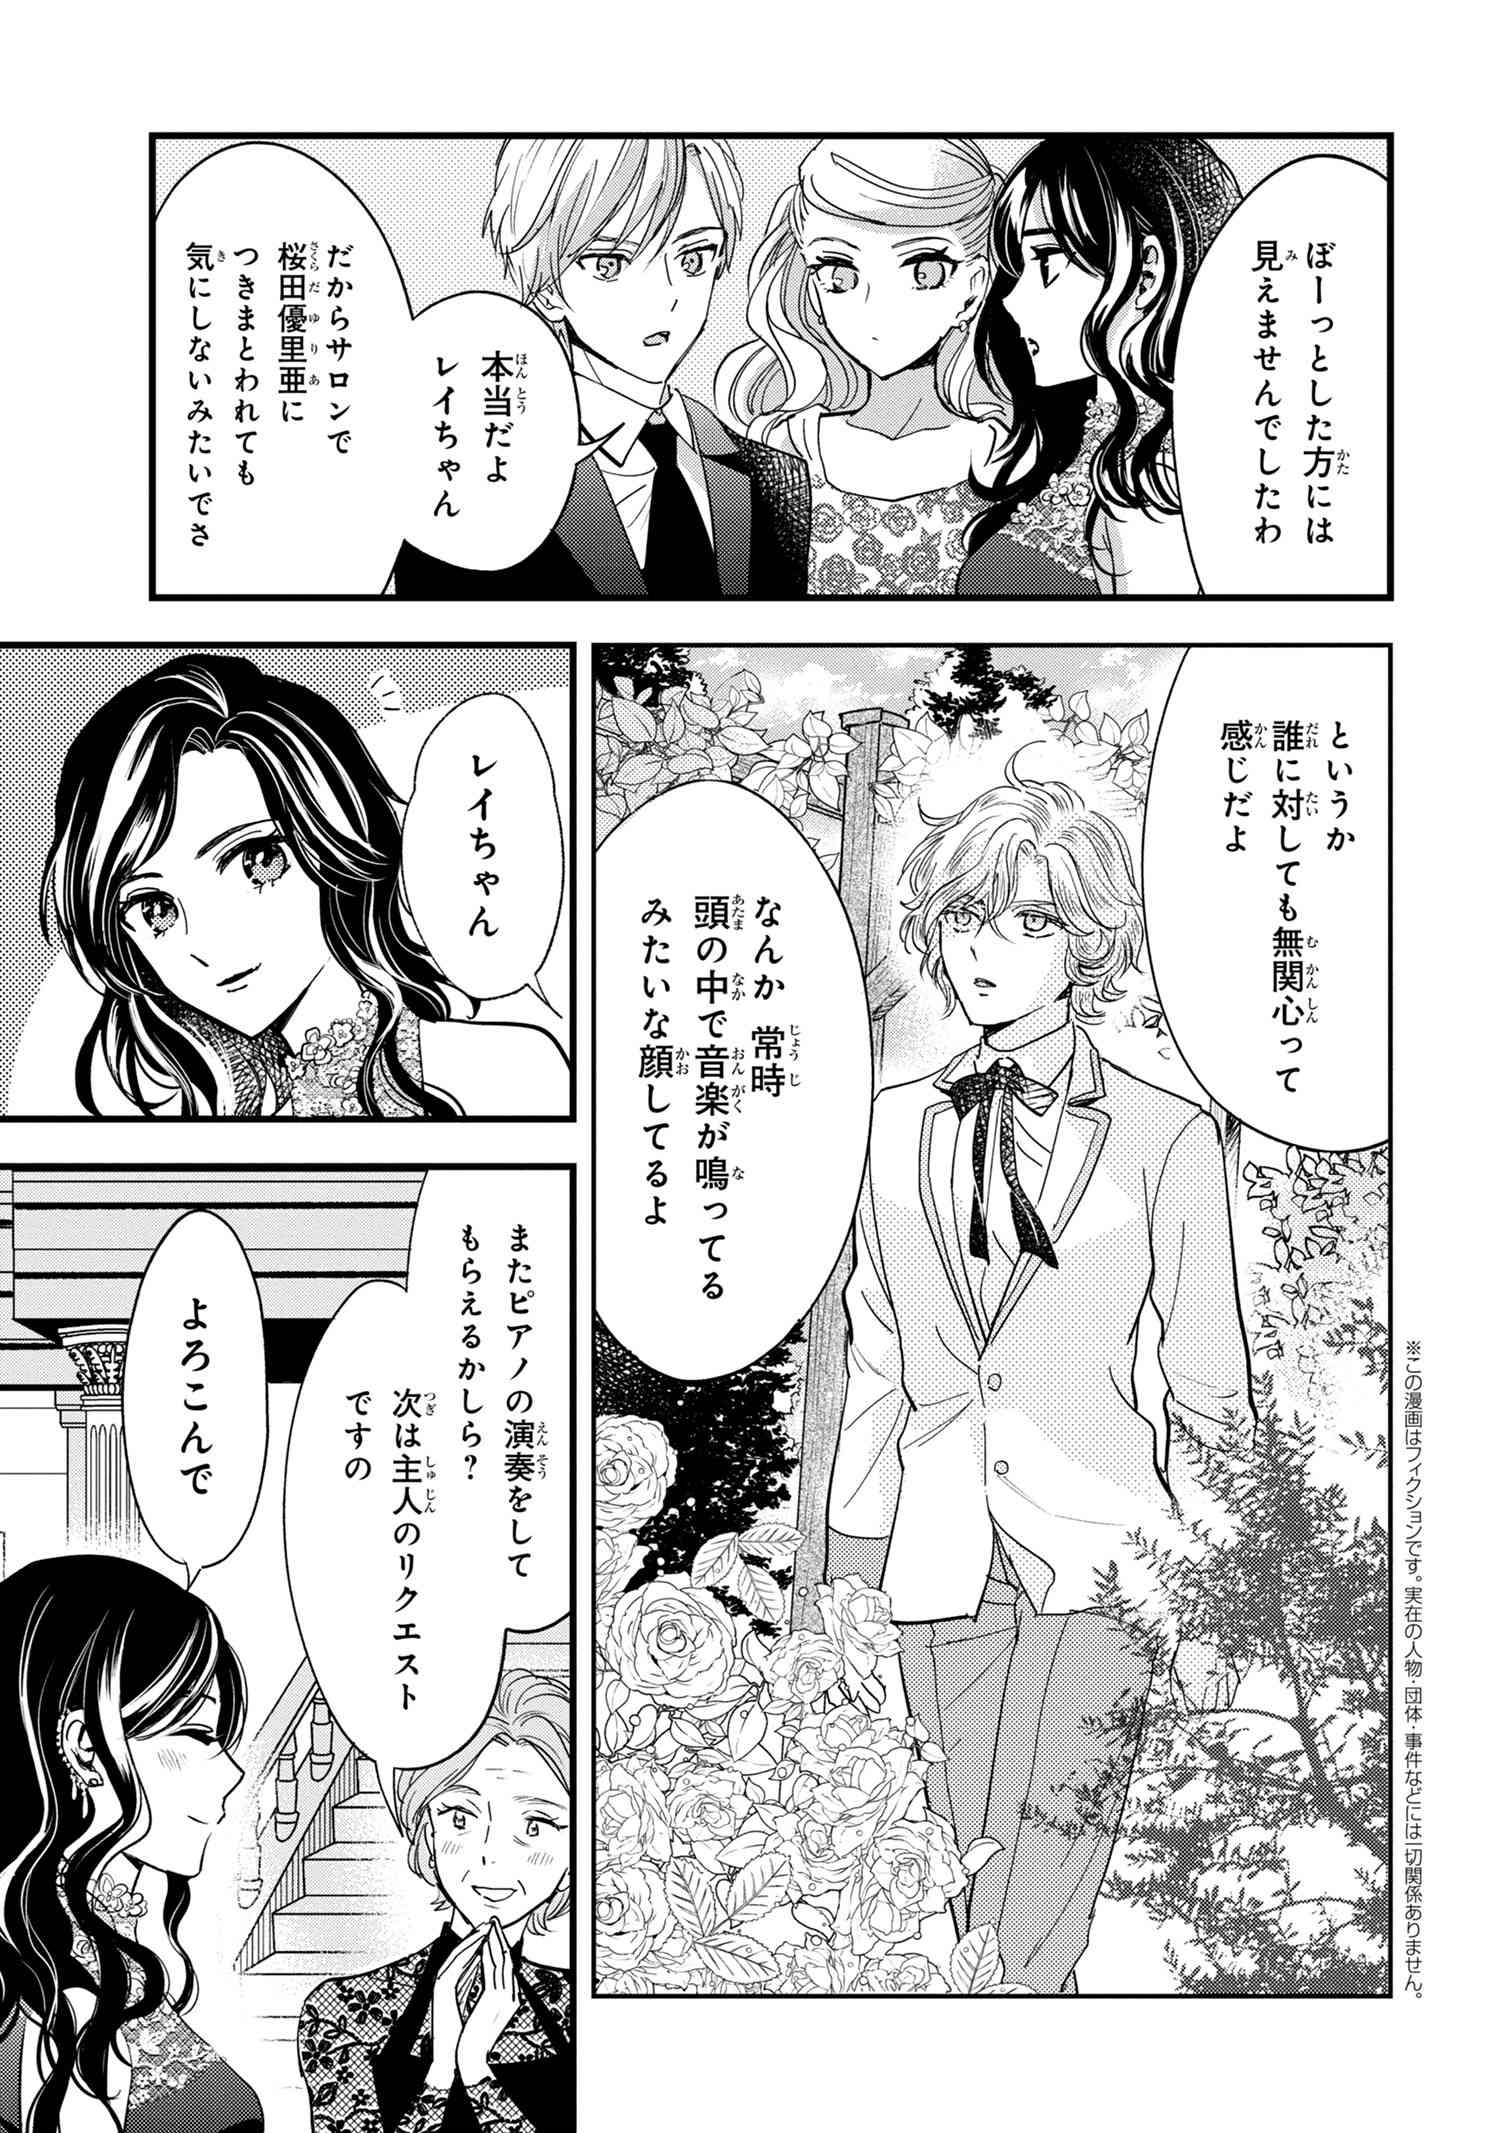 Reiko no Fuugi Akuyaku Reijou to Yobarete imasu ga, tada no Binbou Musume desu - Chapter 14-4 - Page 1